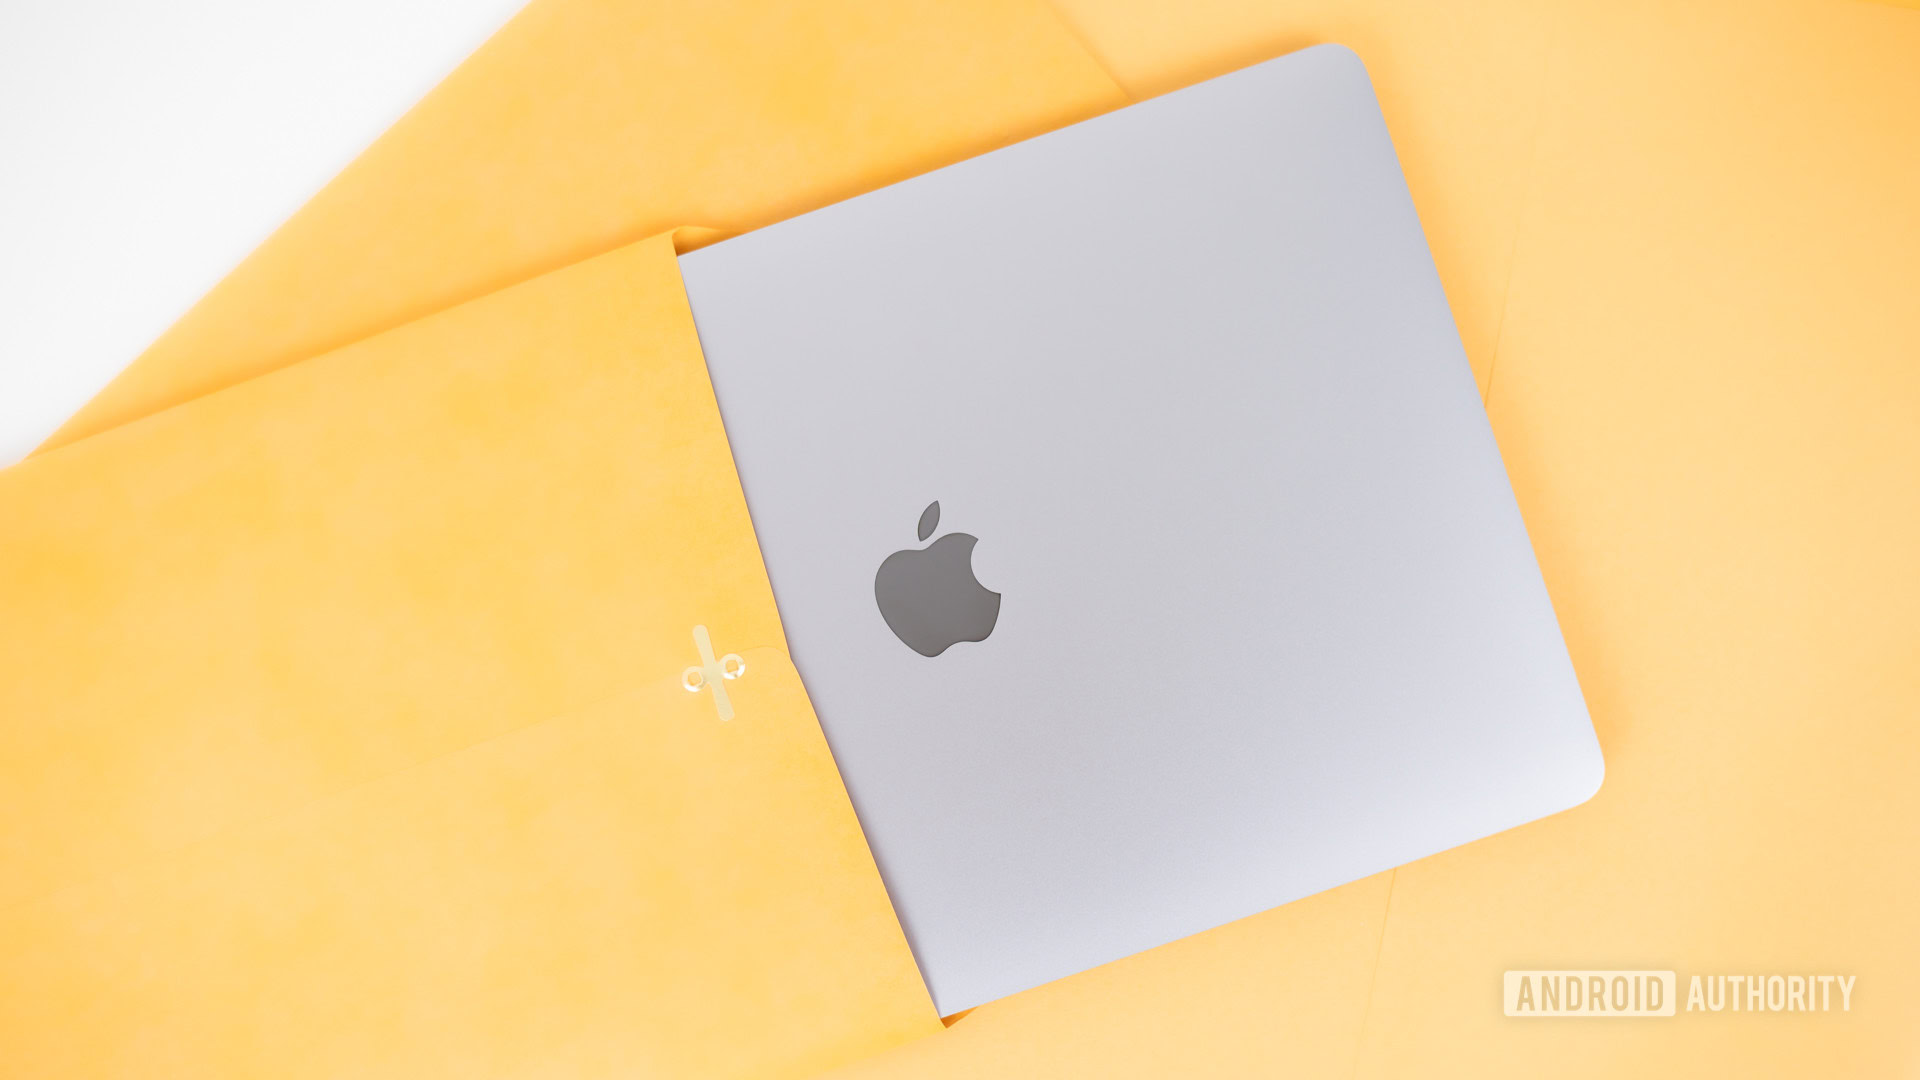 mac laptops air